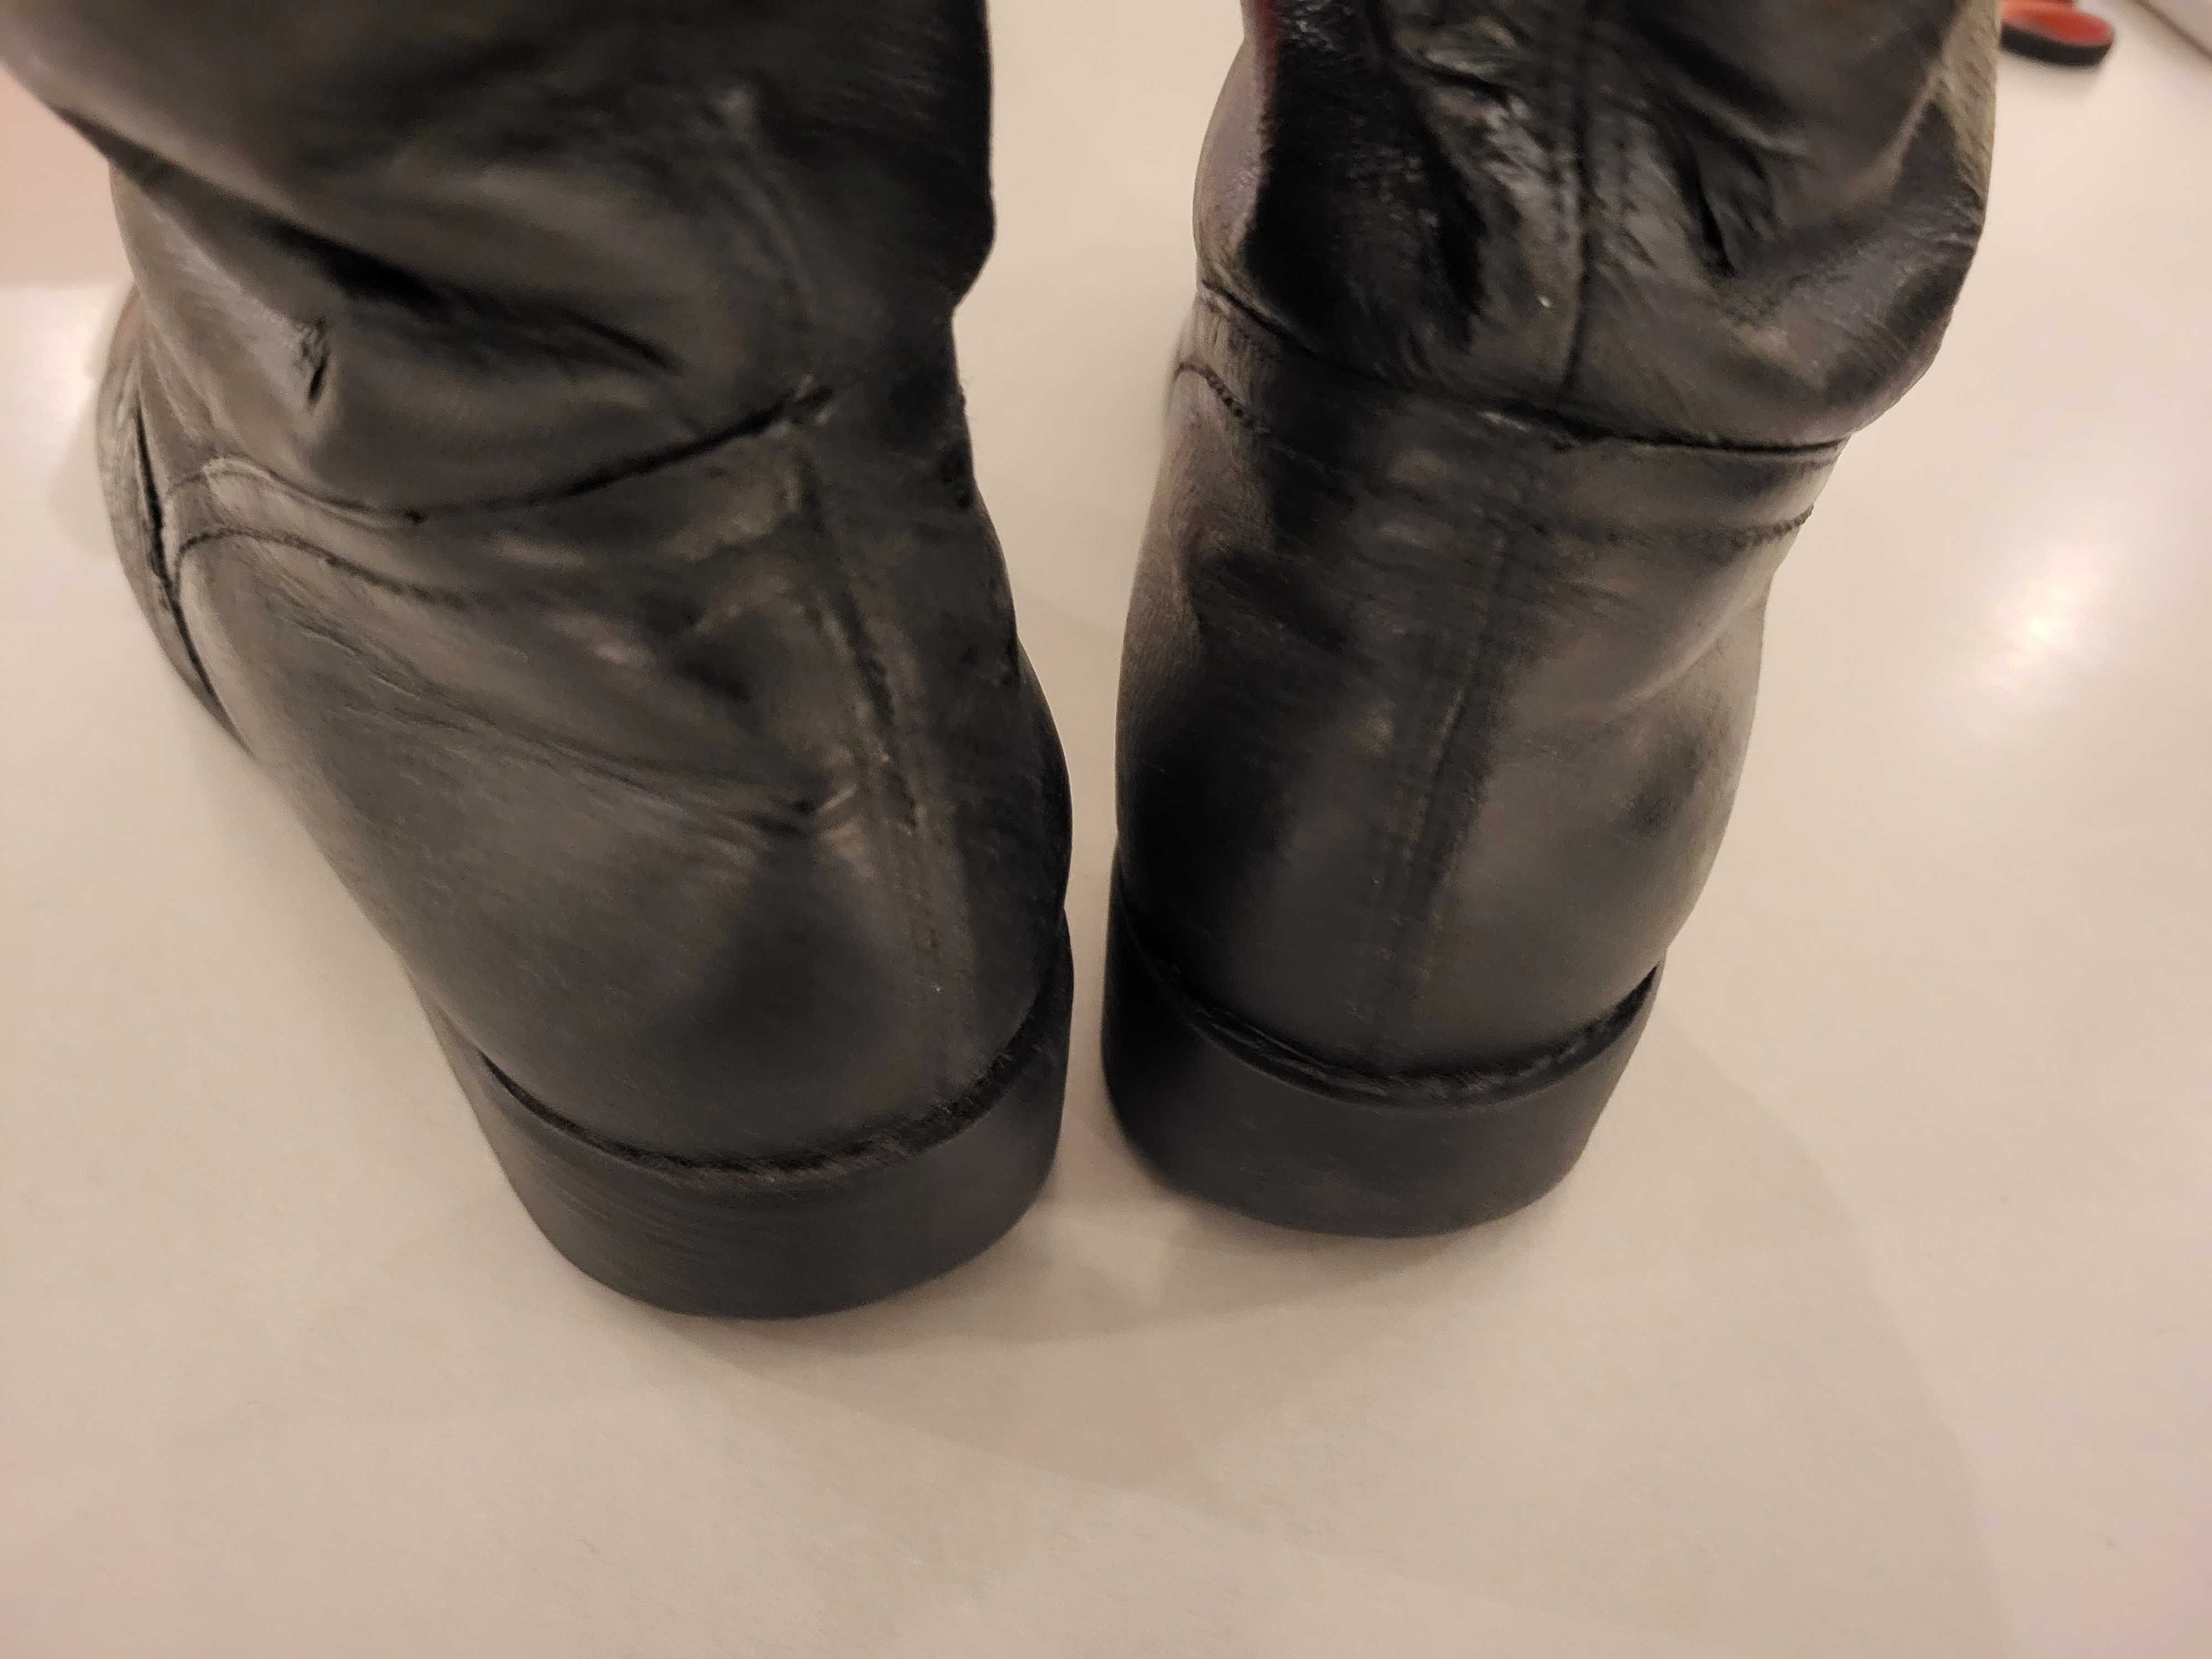 buty zimowe rozmiar wkładki 23,5 cm - cieplutkie i zadbane